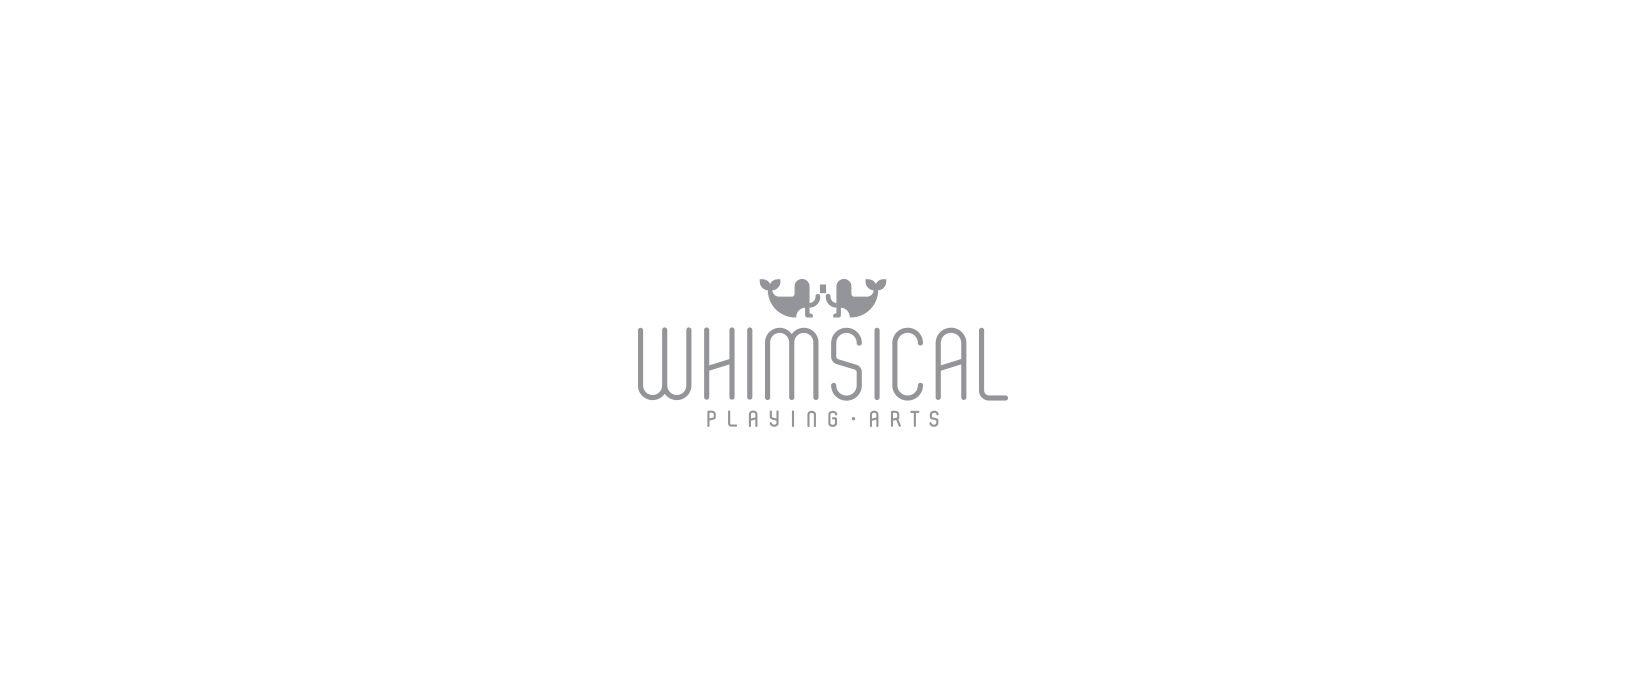 Whimsical Logo - Whimsical Playing Arts I